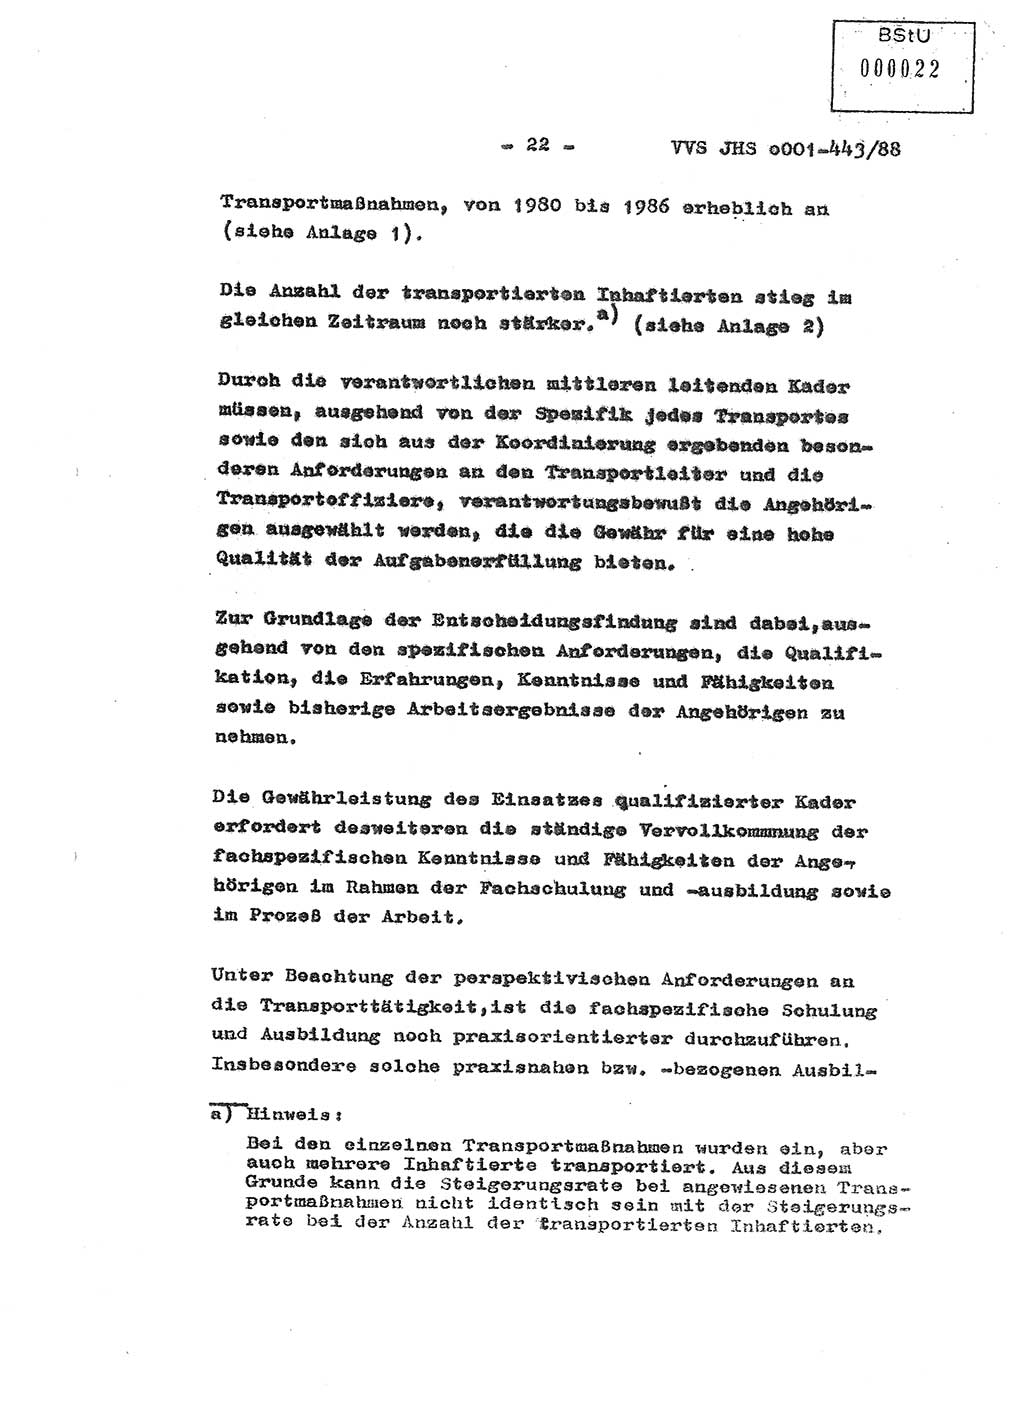 Diplomarbeit Hauptmann Michael Rast (Abt. ⅩⅣ), Major Bernd Rahaus (Abt. ⅩⅣ), Ministerium für Staatssicherheit (MfS) [Deutsche Demokratische Republik (DDR)], Juristische Hochschule (JHS), Vertrauliche Verschlußsache (VVS) o001-443/88, Potsdam 1988, Seite 22 (Dipl.-Arb. MfS DDR JHS VVS o001-443/88 1988, S. 22)